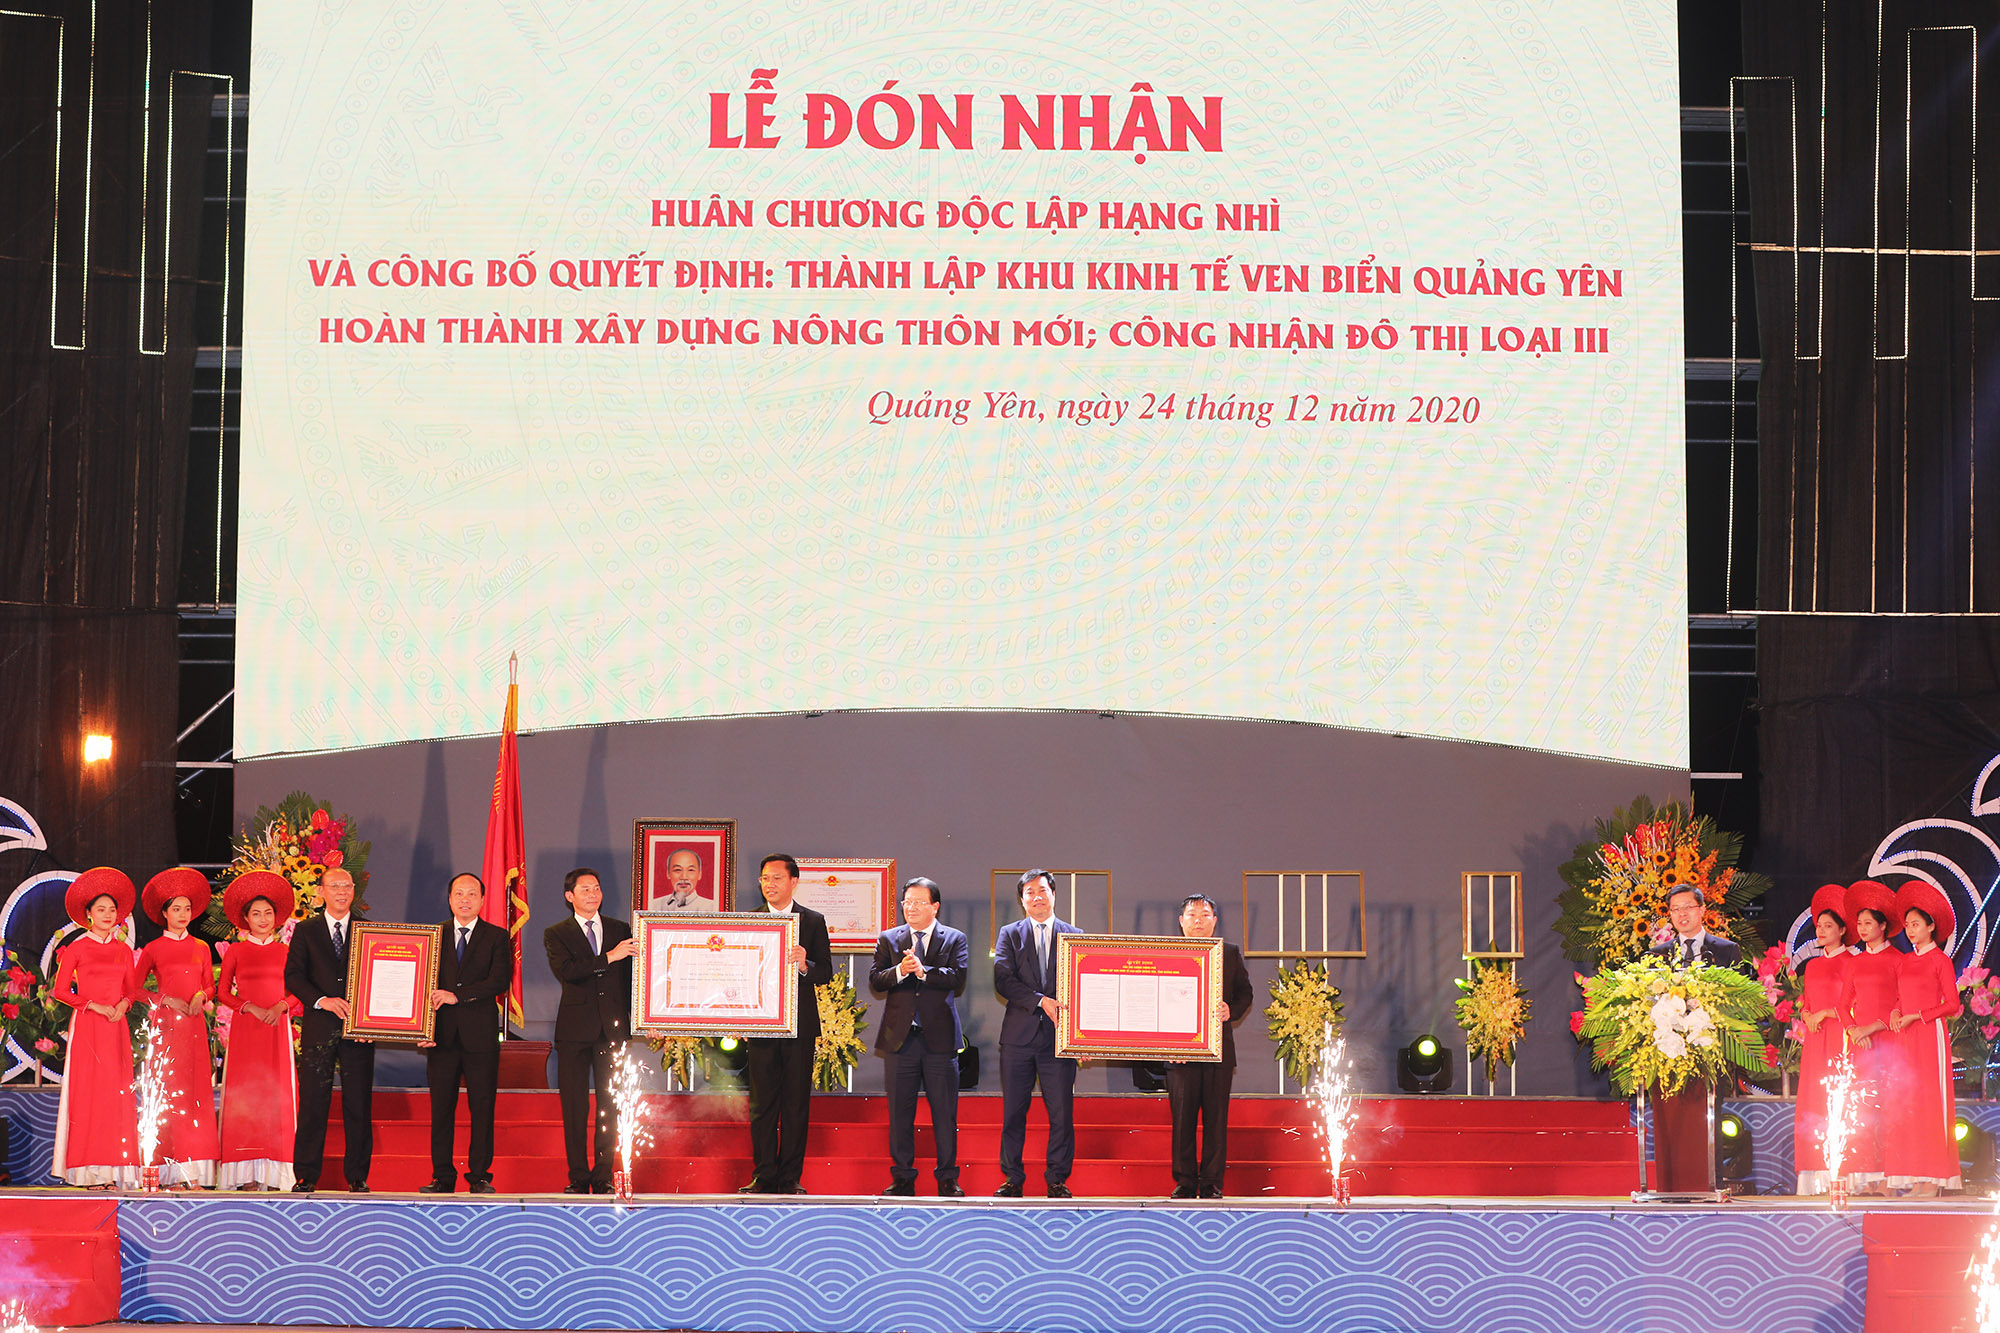 Thành lập Khu kinh tế ven biển Quảng Yên - Ảnh 2.